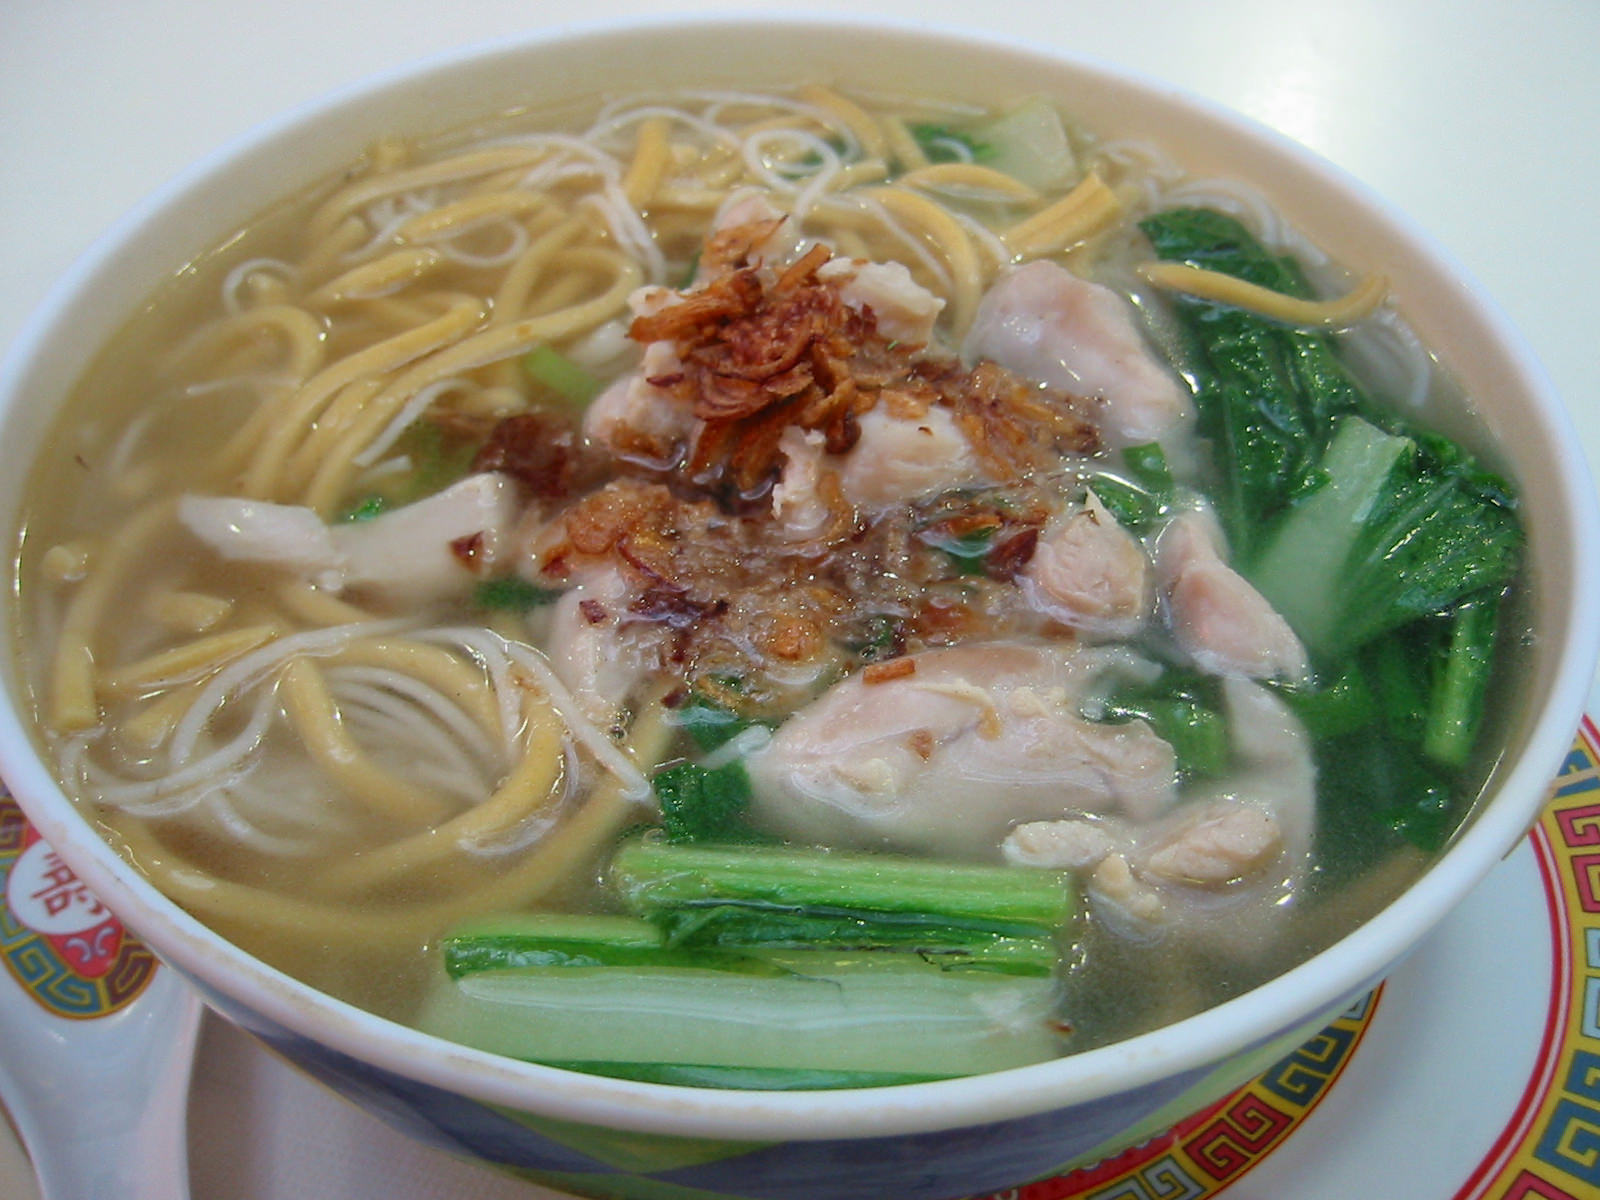 Chicken noodle soup